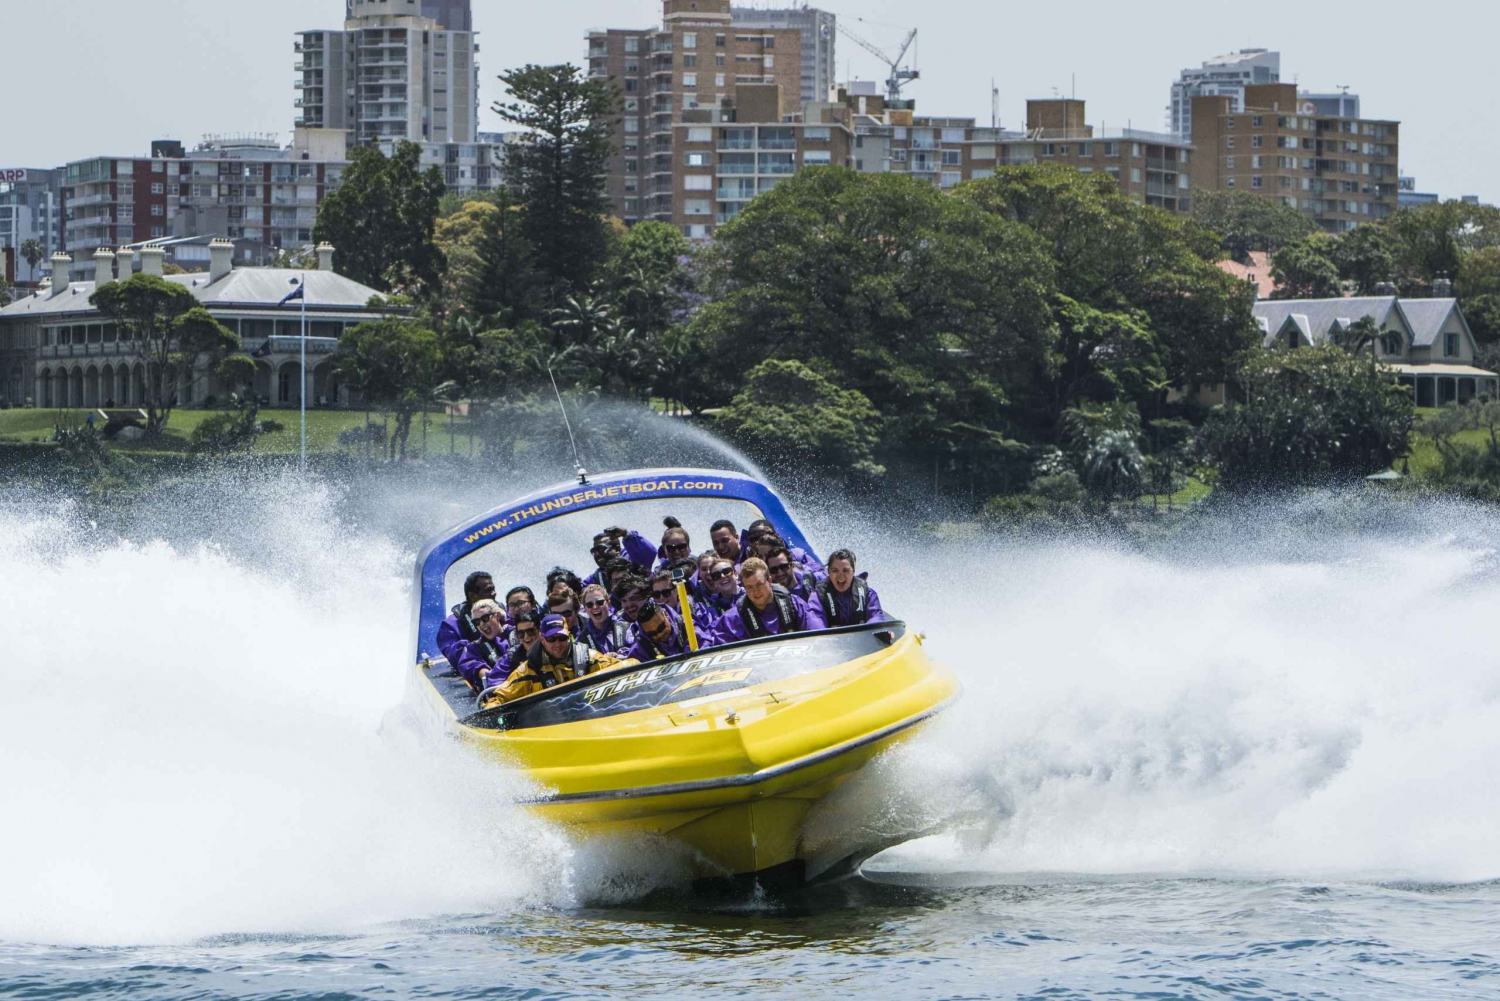 Porto di Sydney: giro adrenalinico di 45 minuti in motoscafo